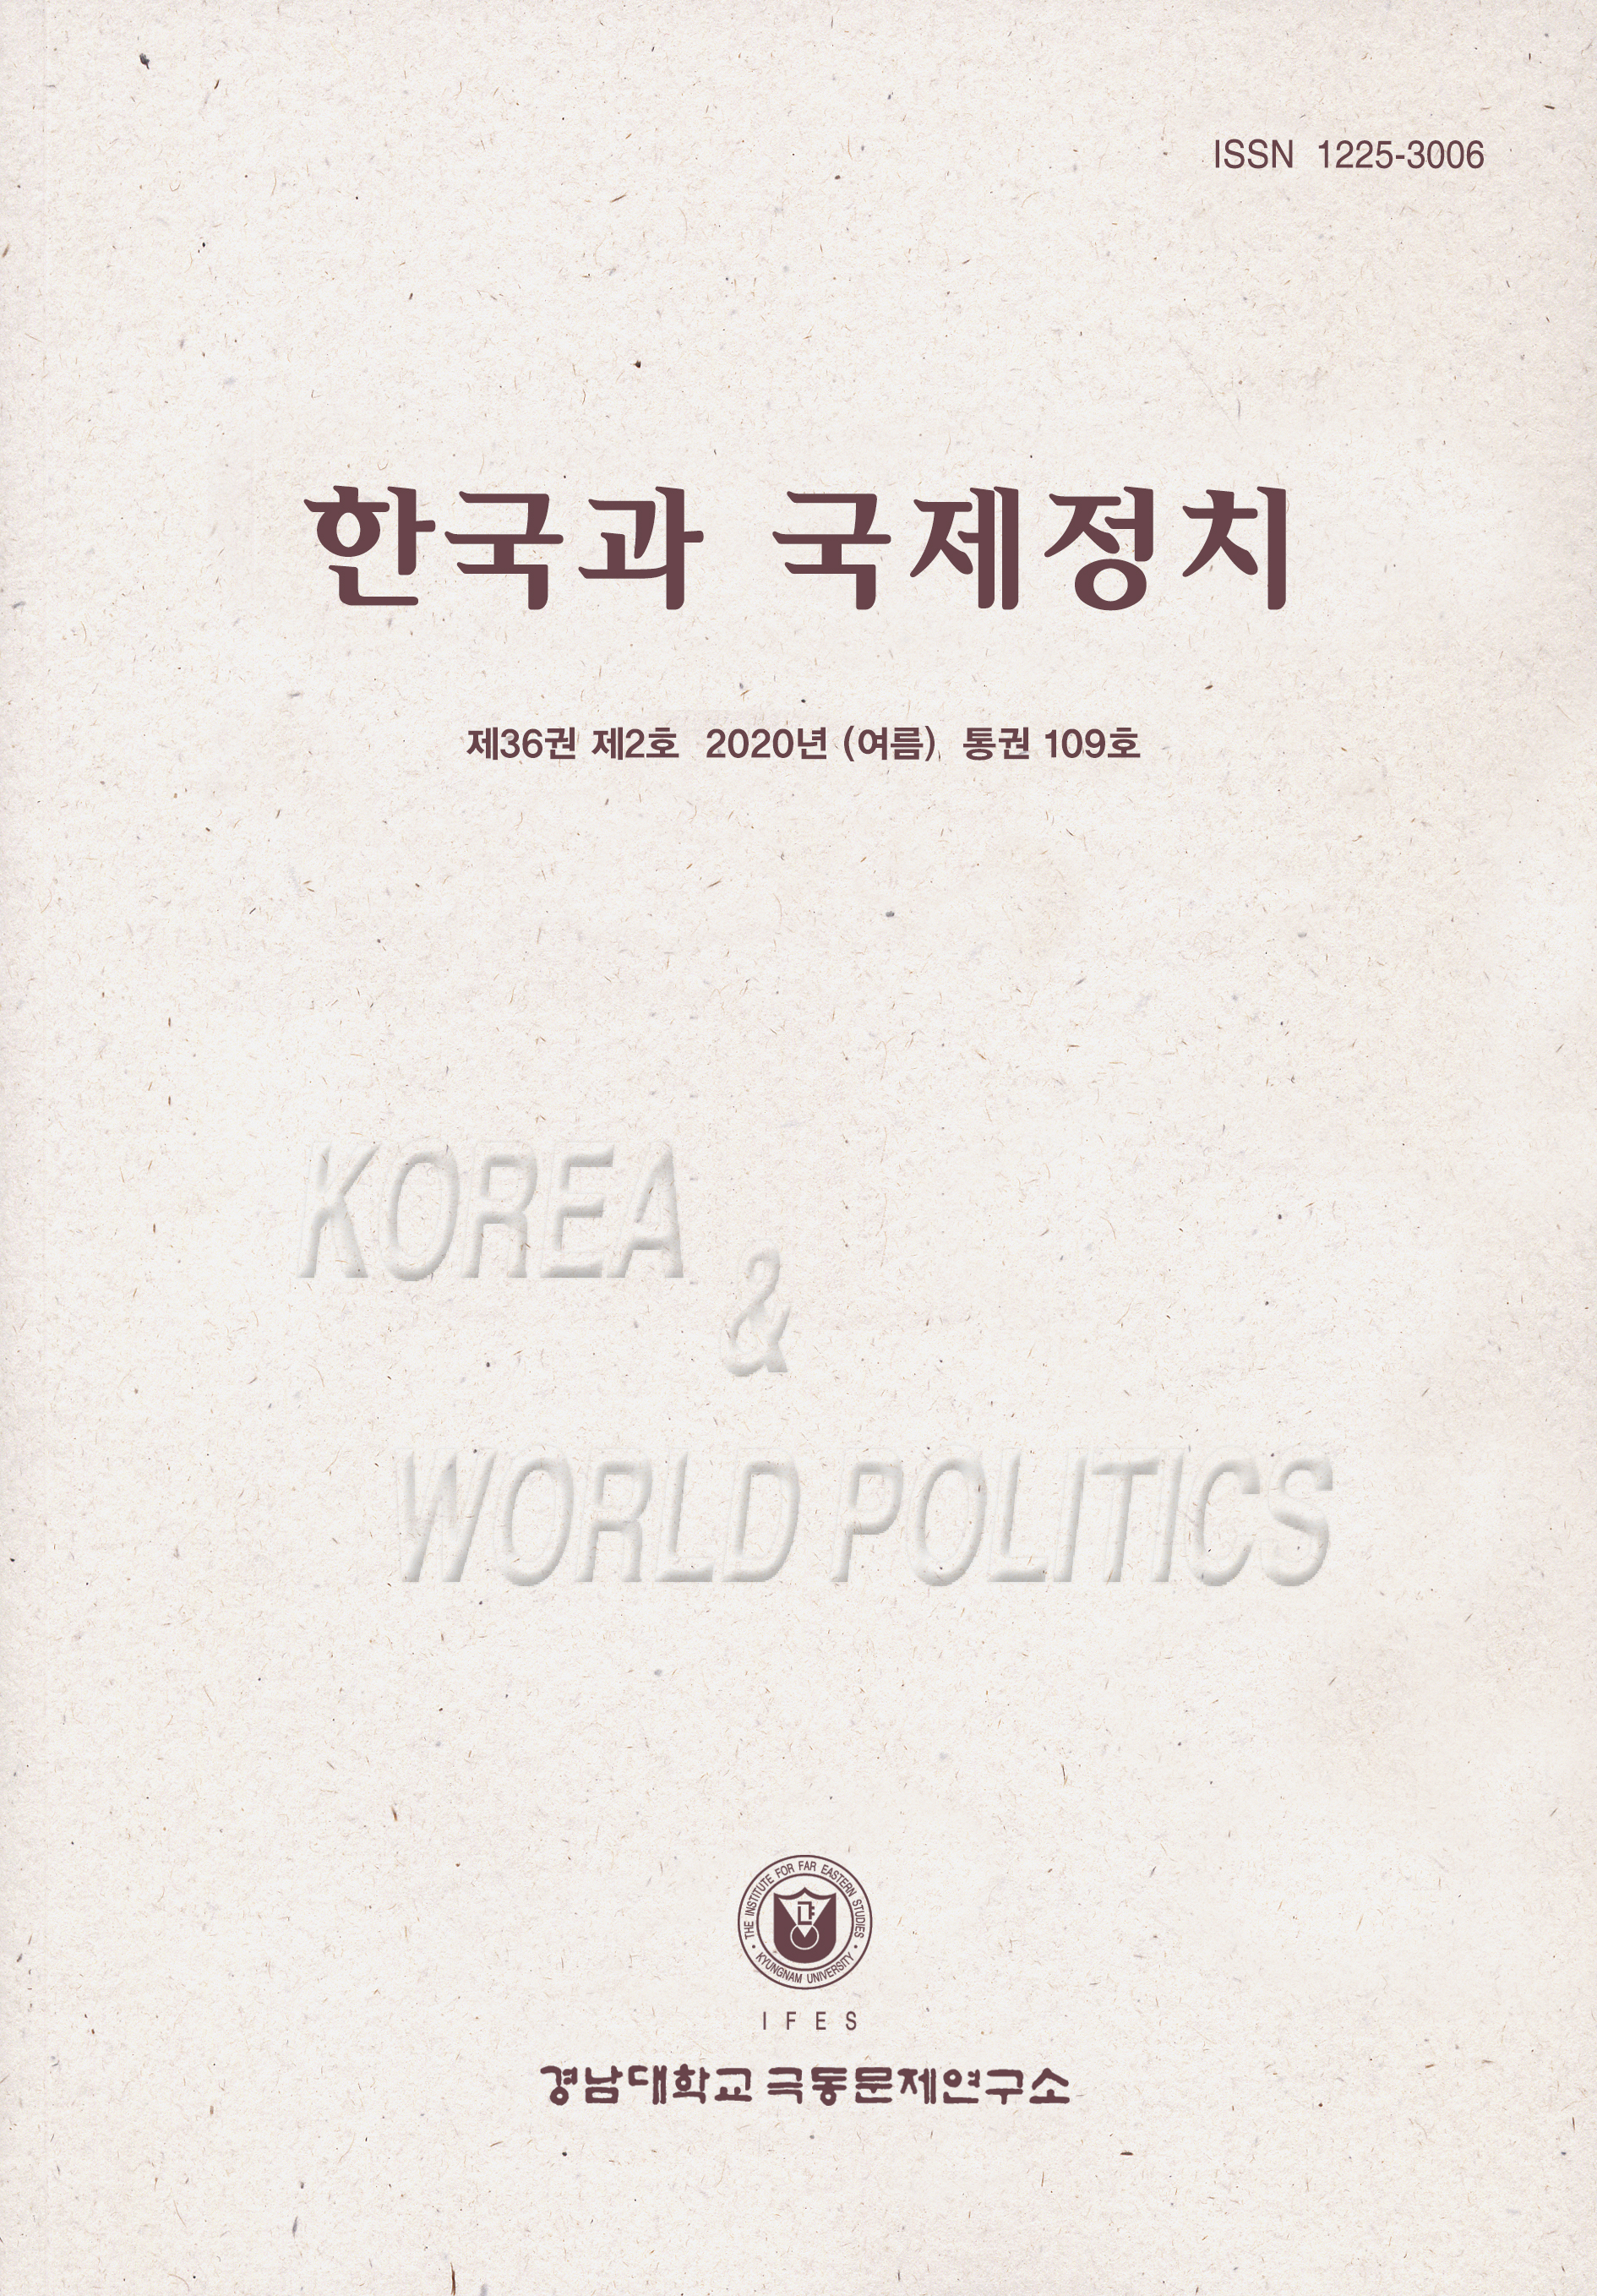 Korea and World Politics, Vol.36, No.2